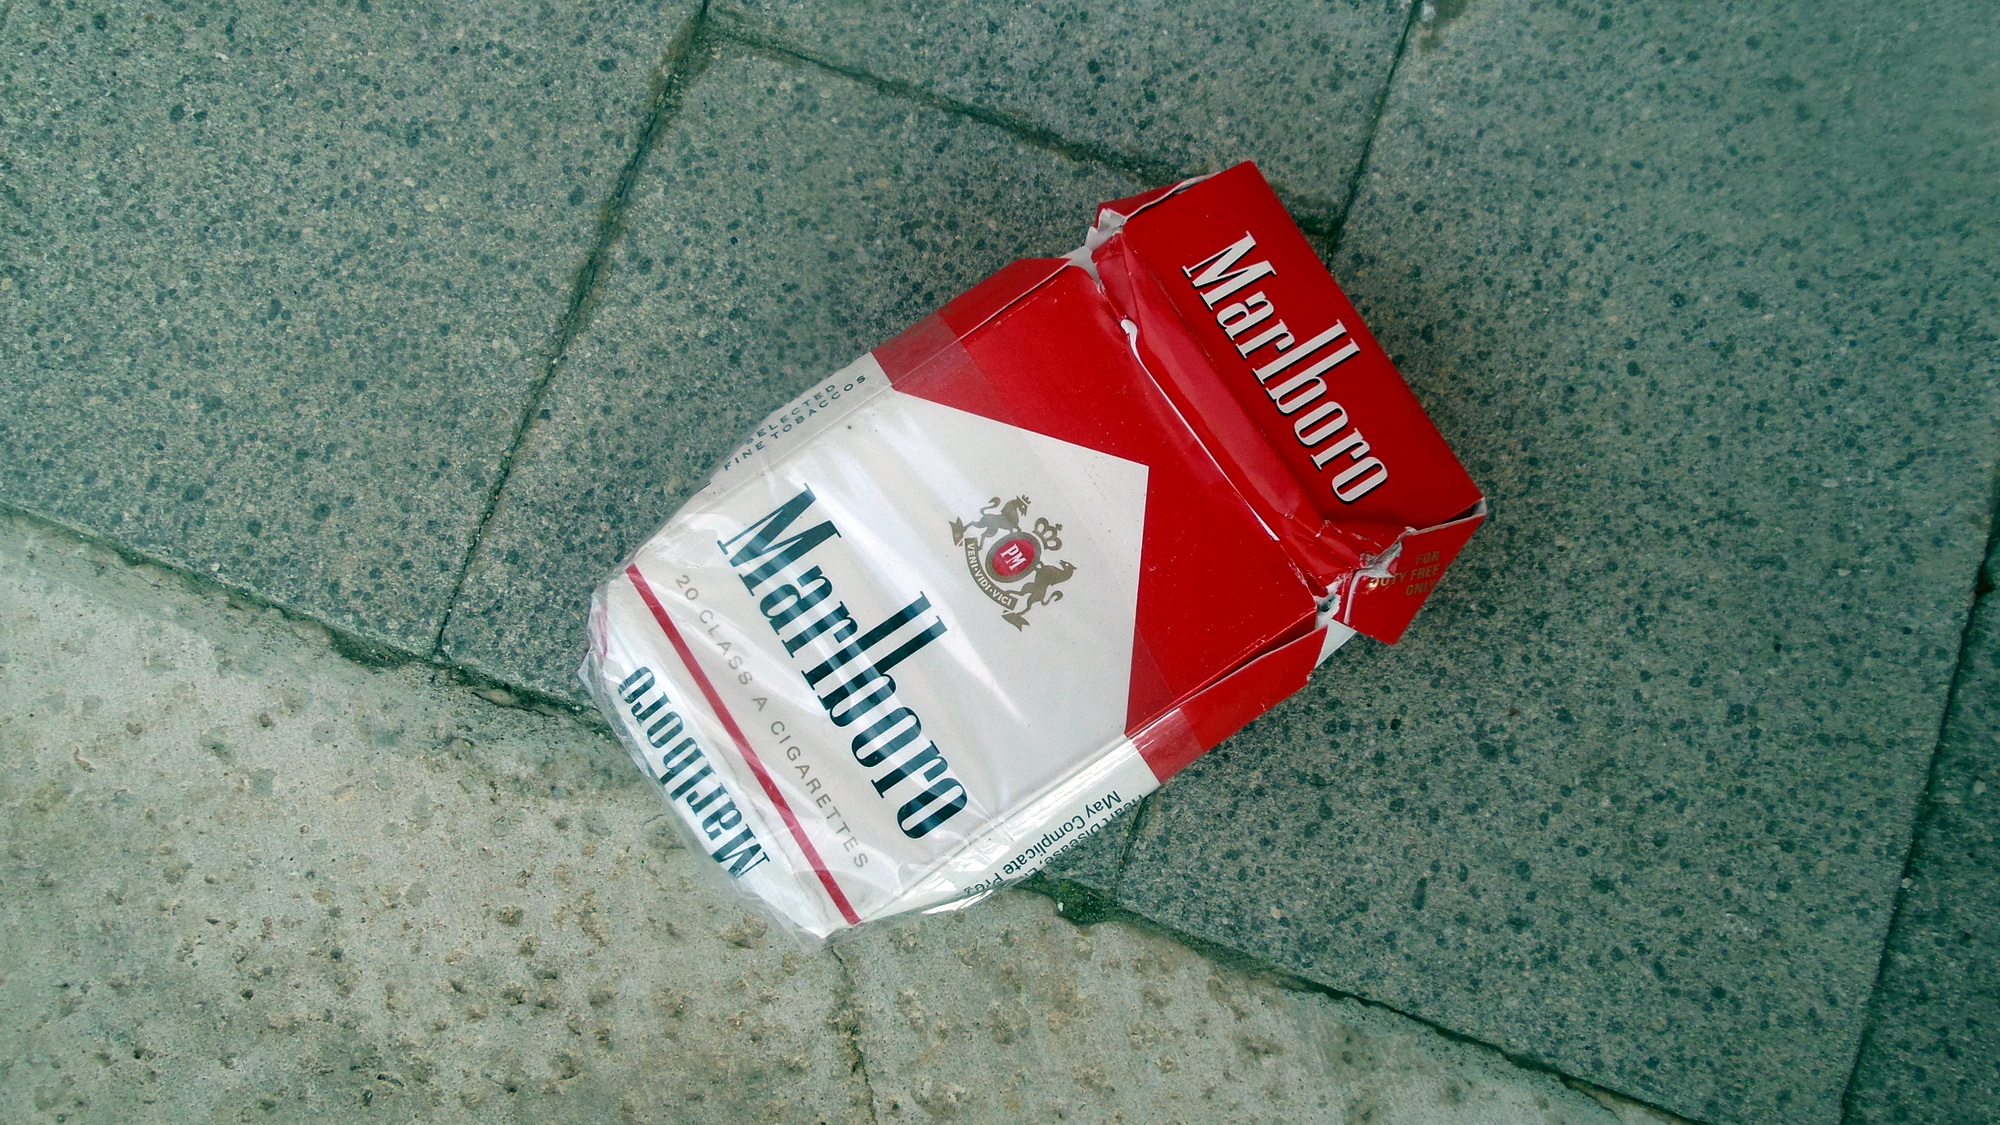  Sigarette da contrabbando, commercio si impenna: allarme anche a S.Croce